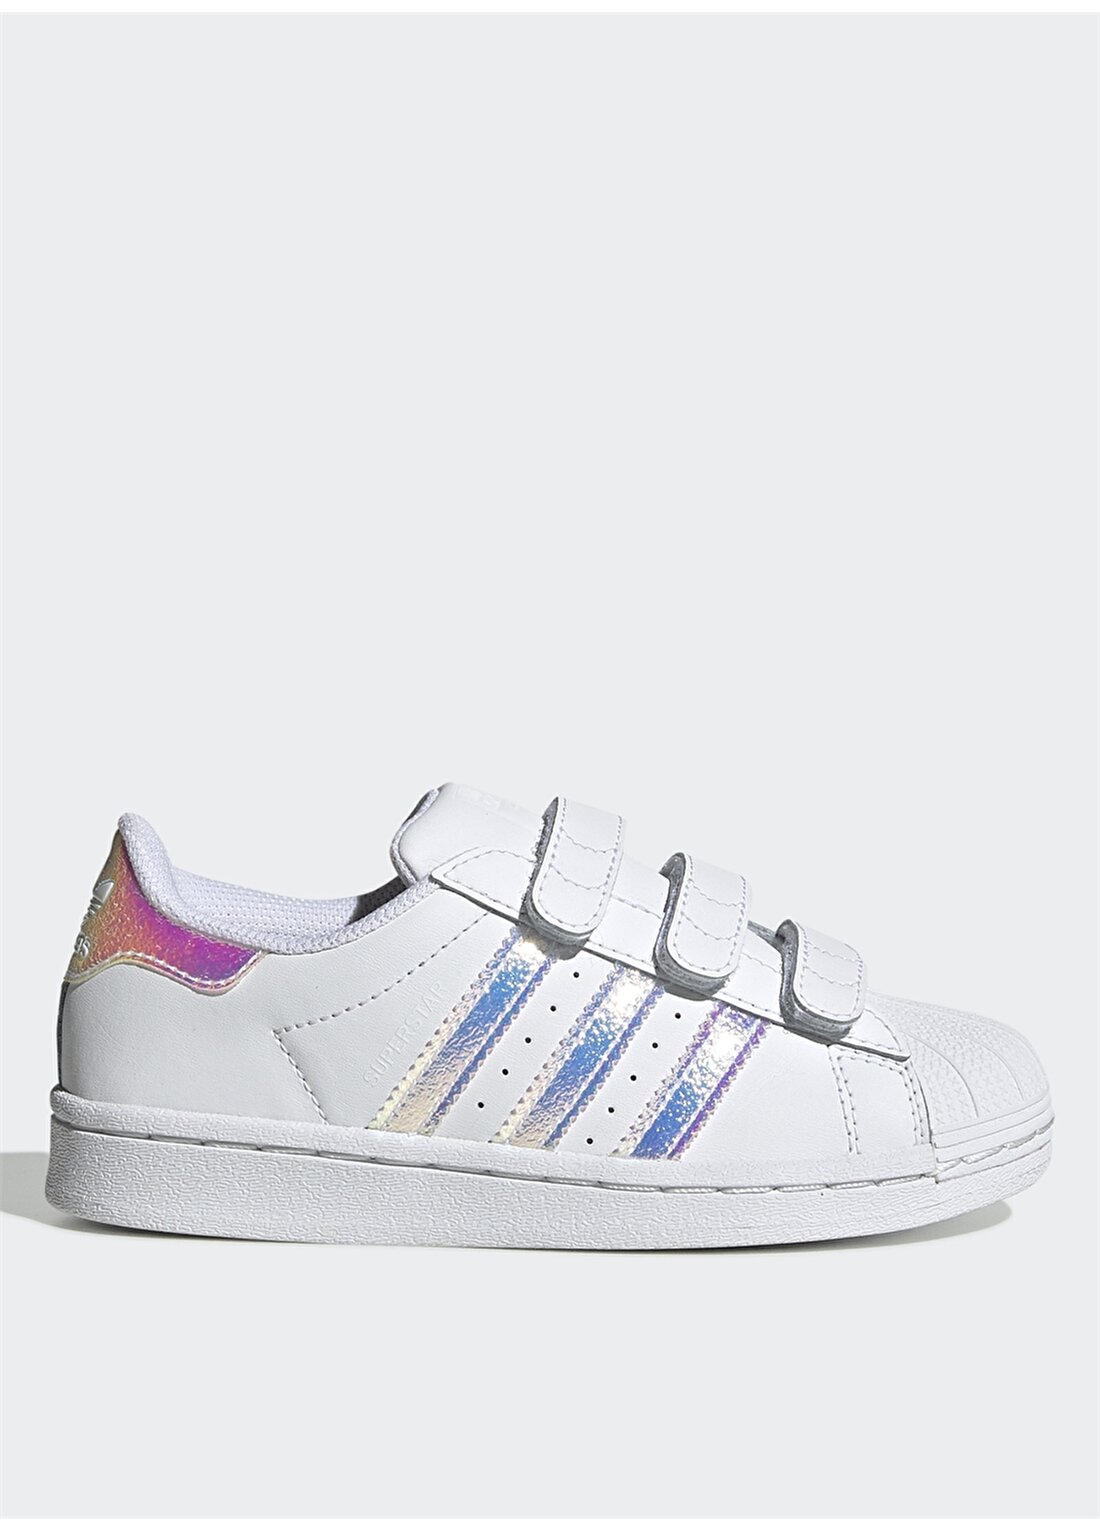 Adidas Beyaz - Gümüş Kadın Yürüyüş Ayakkabısı FV3655 SUPERSTAR C